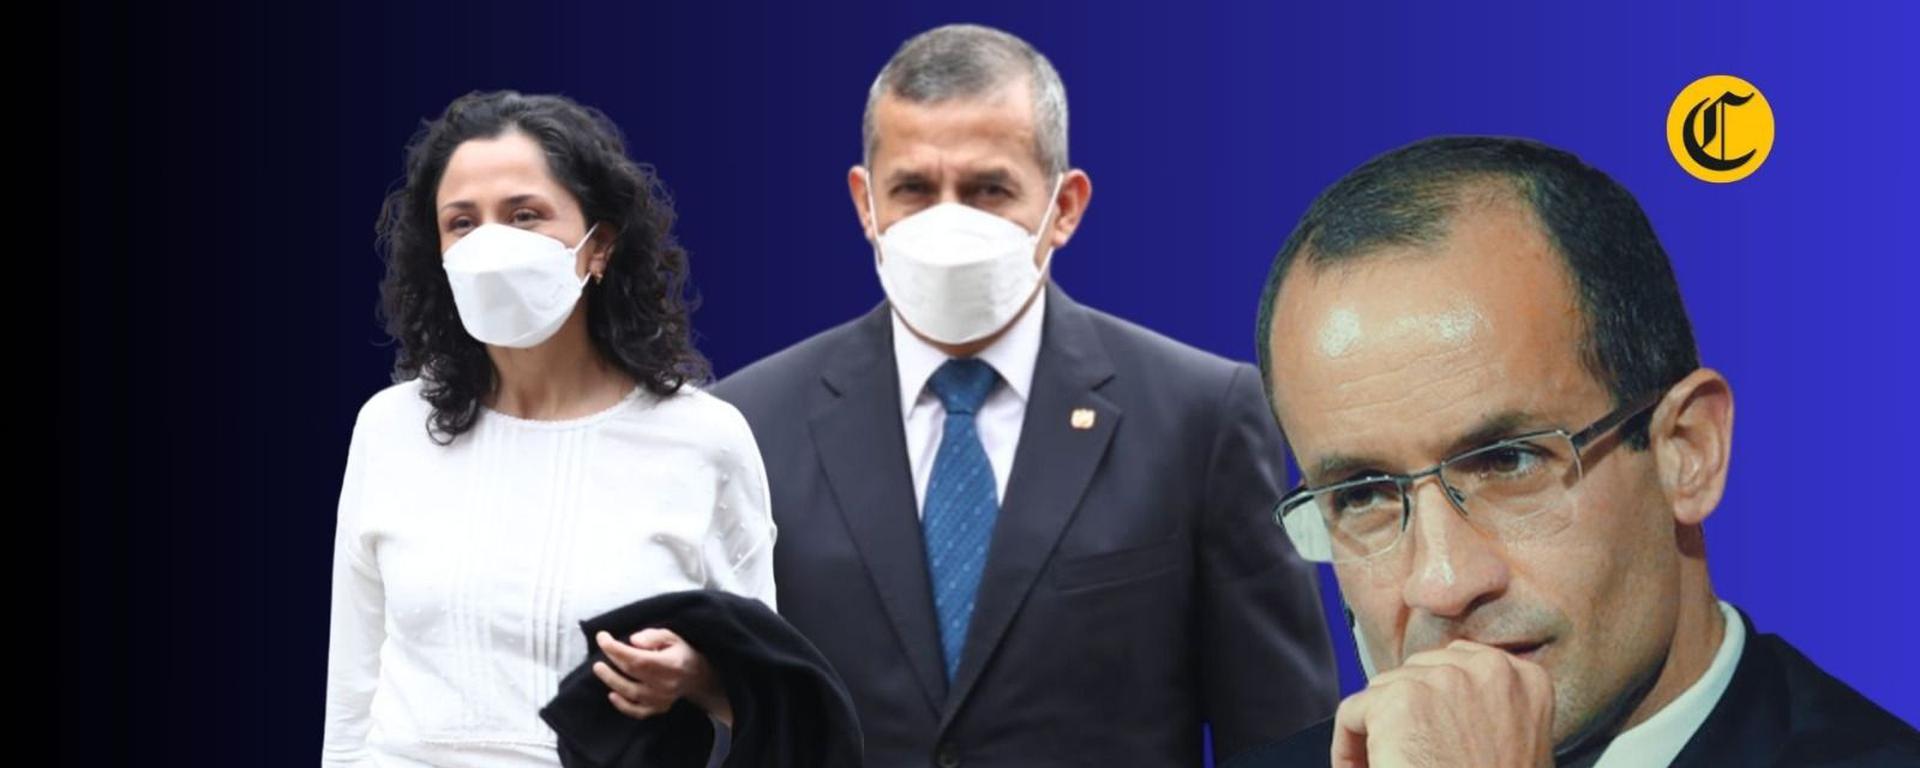 Ollanta Humala: ¿Qué impacto tendrá decisión del PJ de prescindir de las declaraciones de Marcelo Odebrecht?